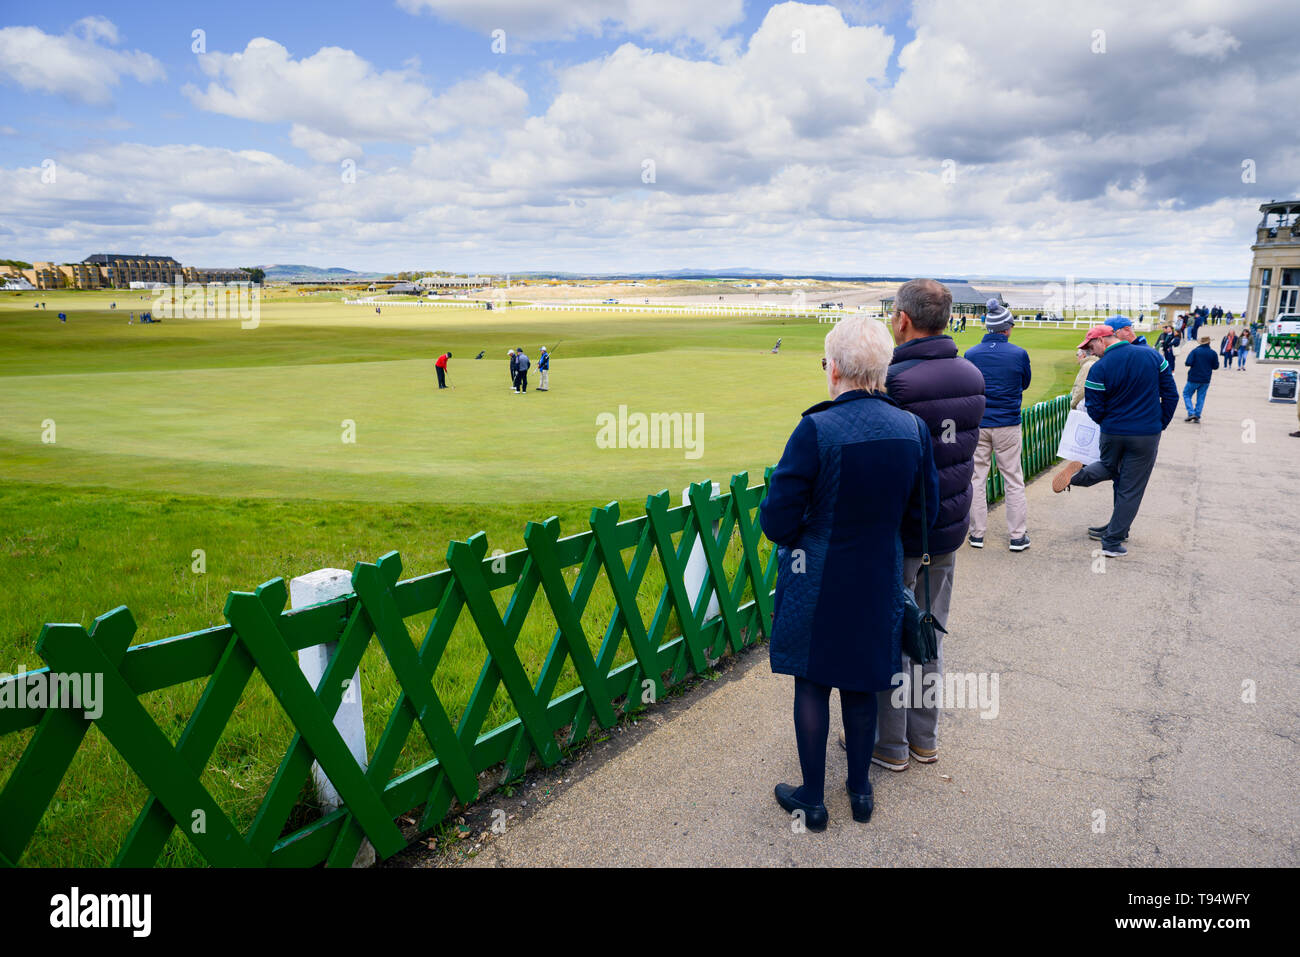 Gli amanti del golf giocare xviii green presso il Royal and Ancient Golf Club di St Andrews in Scozia, Regno Unito. Il club, uno dei più antichi e famosi in tutto il mondo Foto Stock